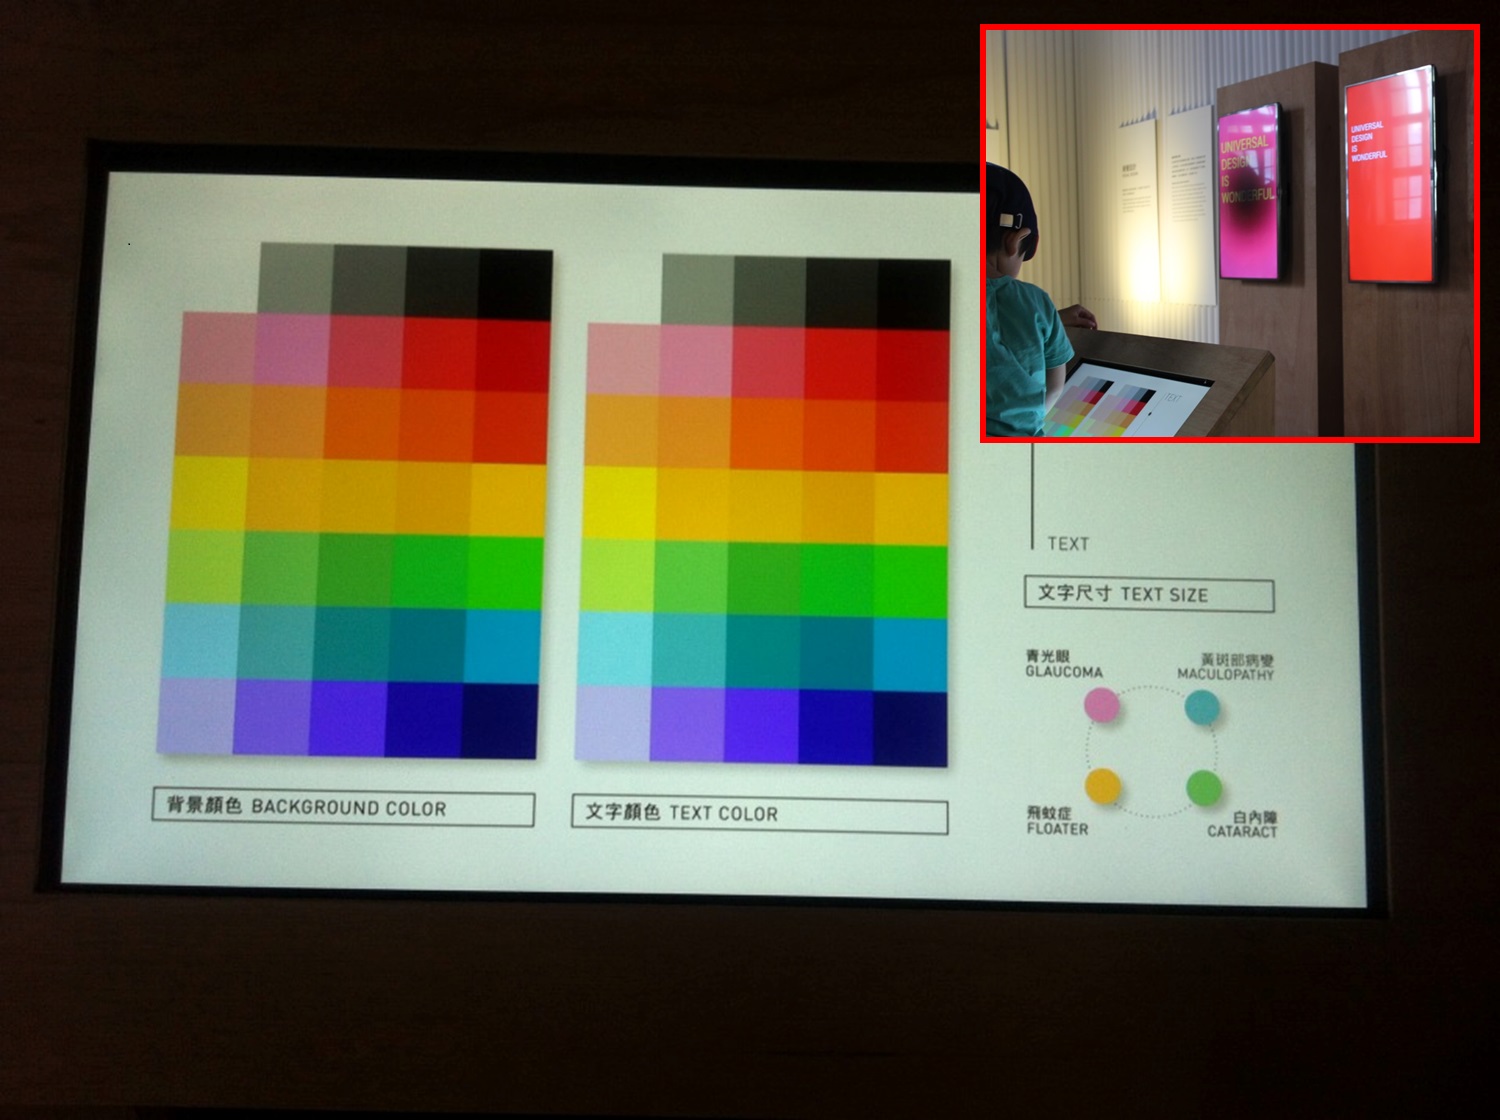 可調整螢幕上文字及背景顏色的互動式裝置